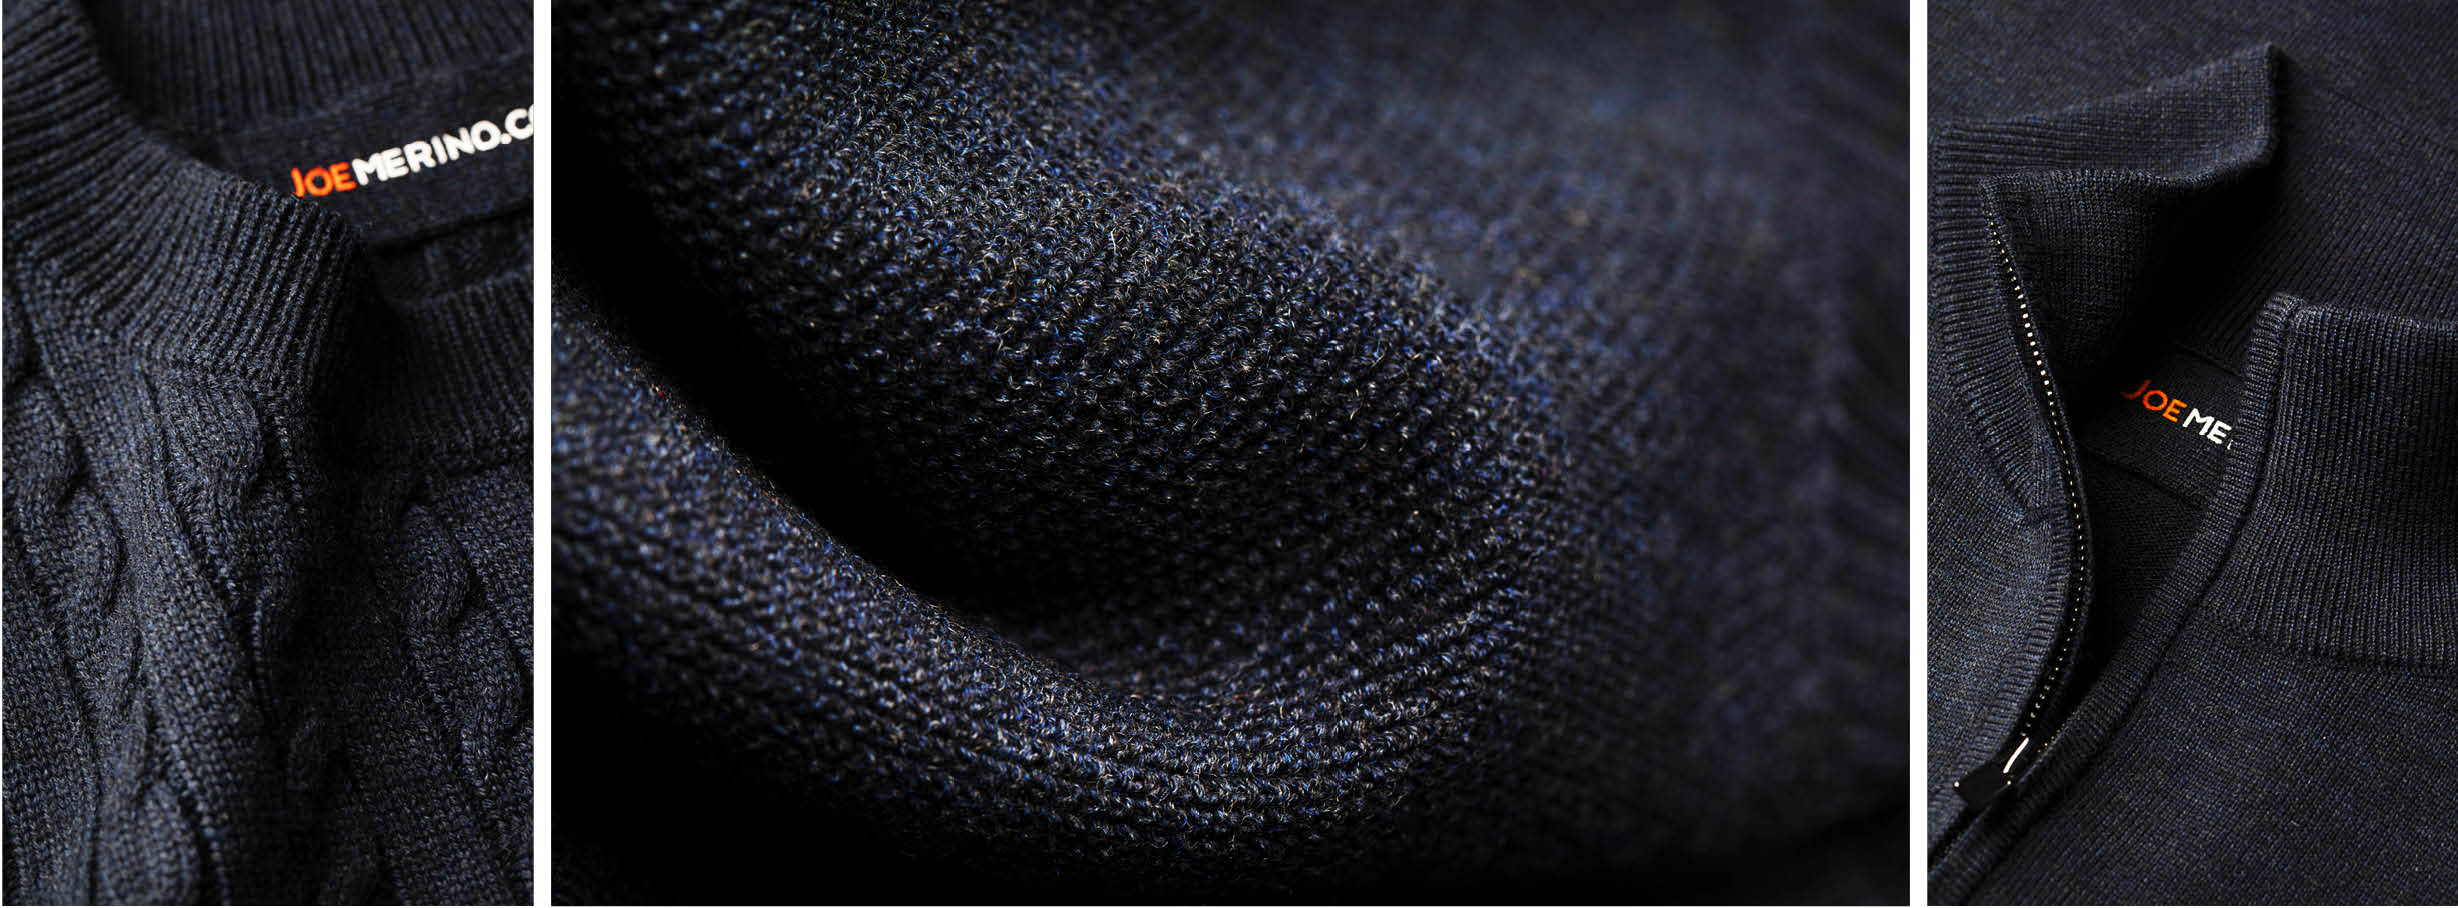 Detailfoto van dikke trui